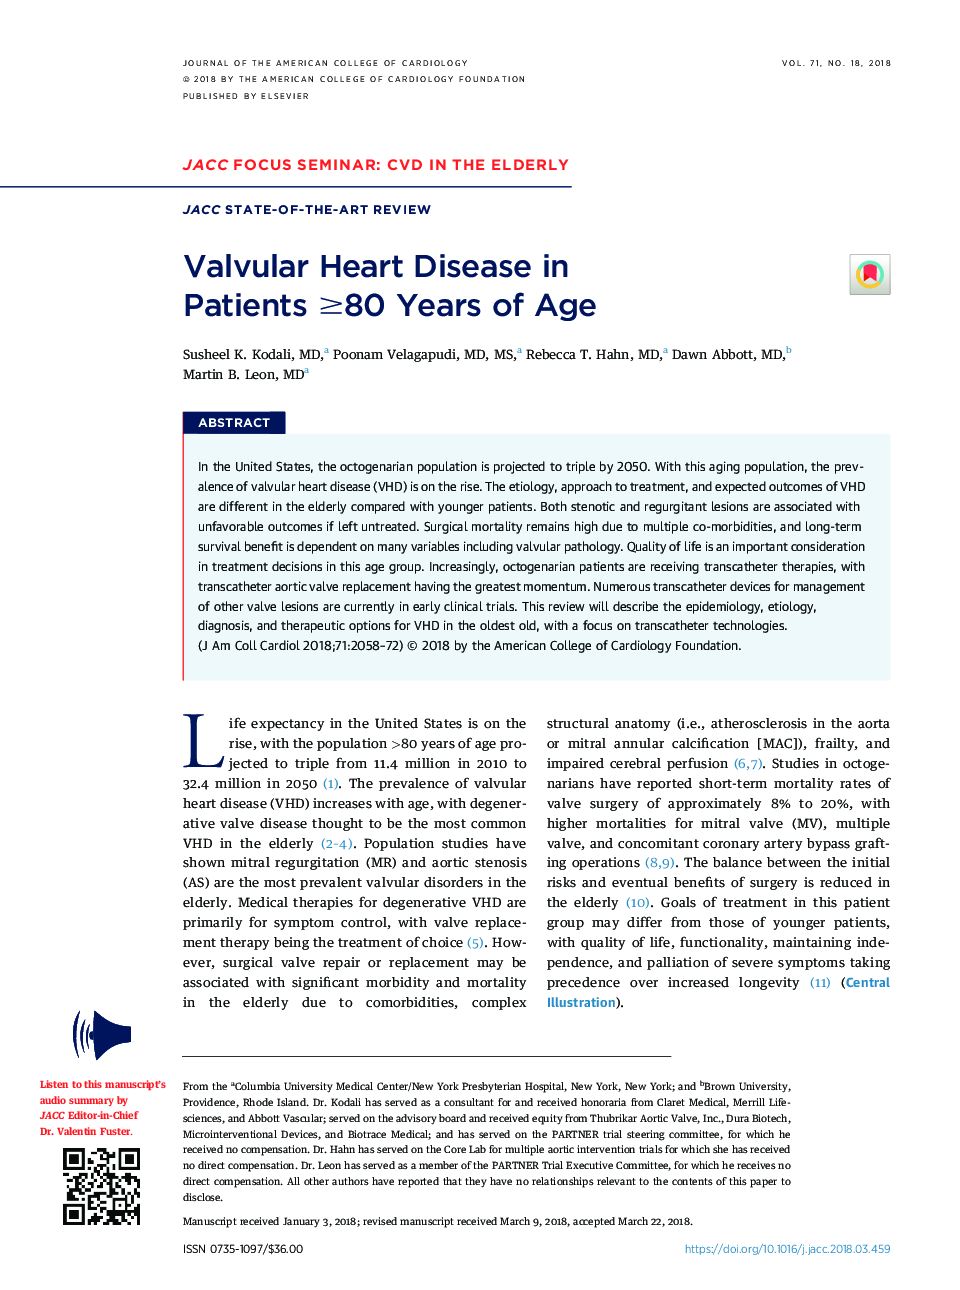 Valvular Heart Disease in PatientsÂ â¥80Â Years of Age